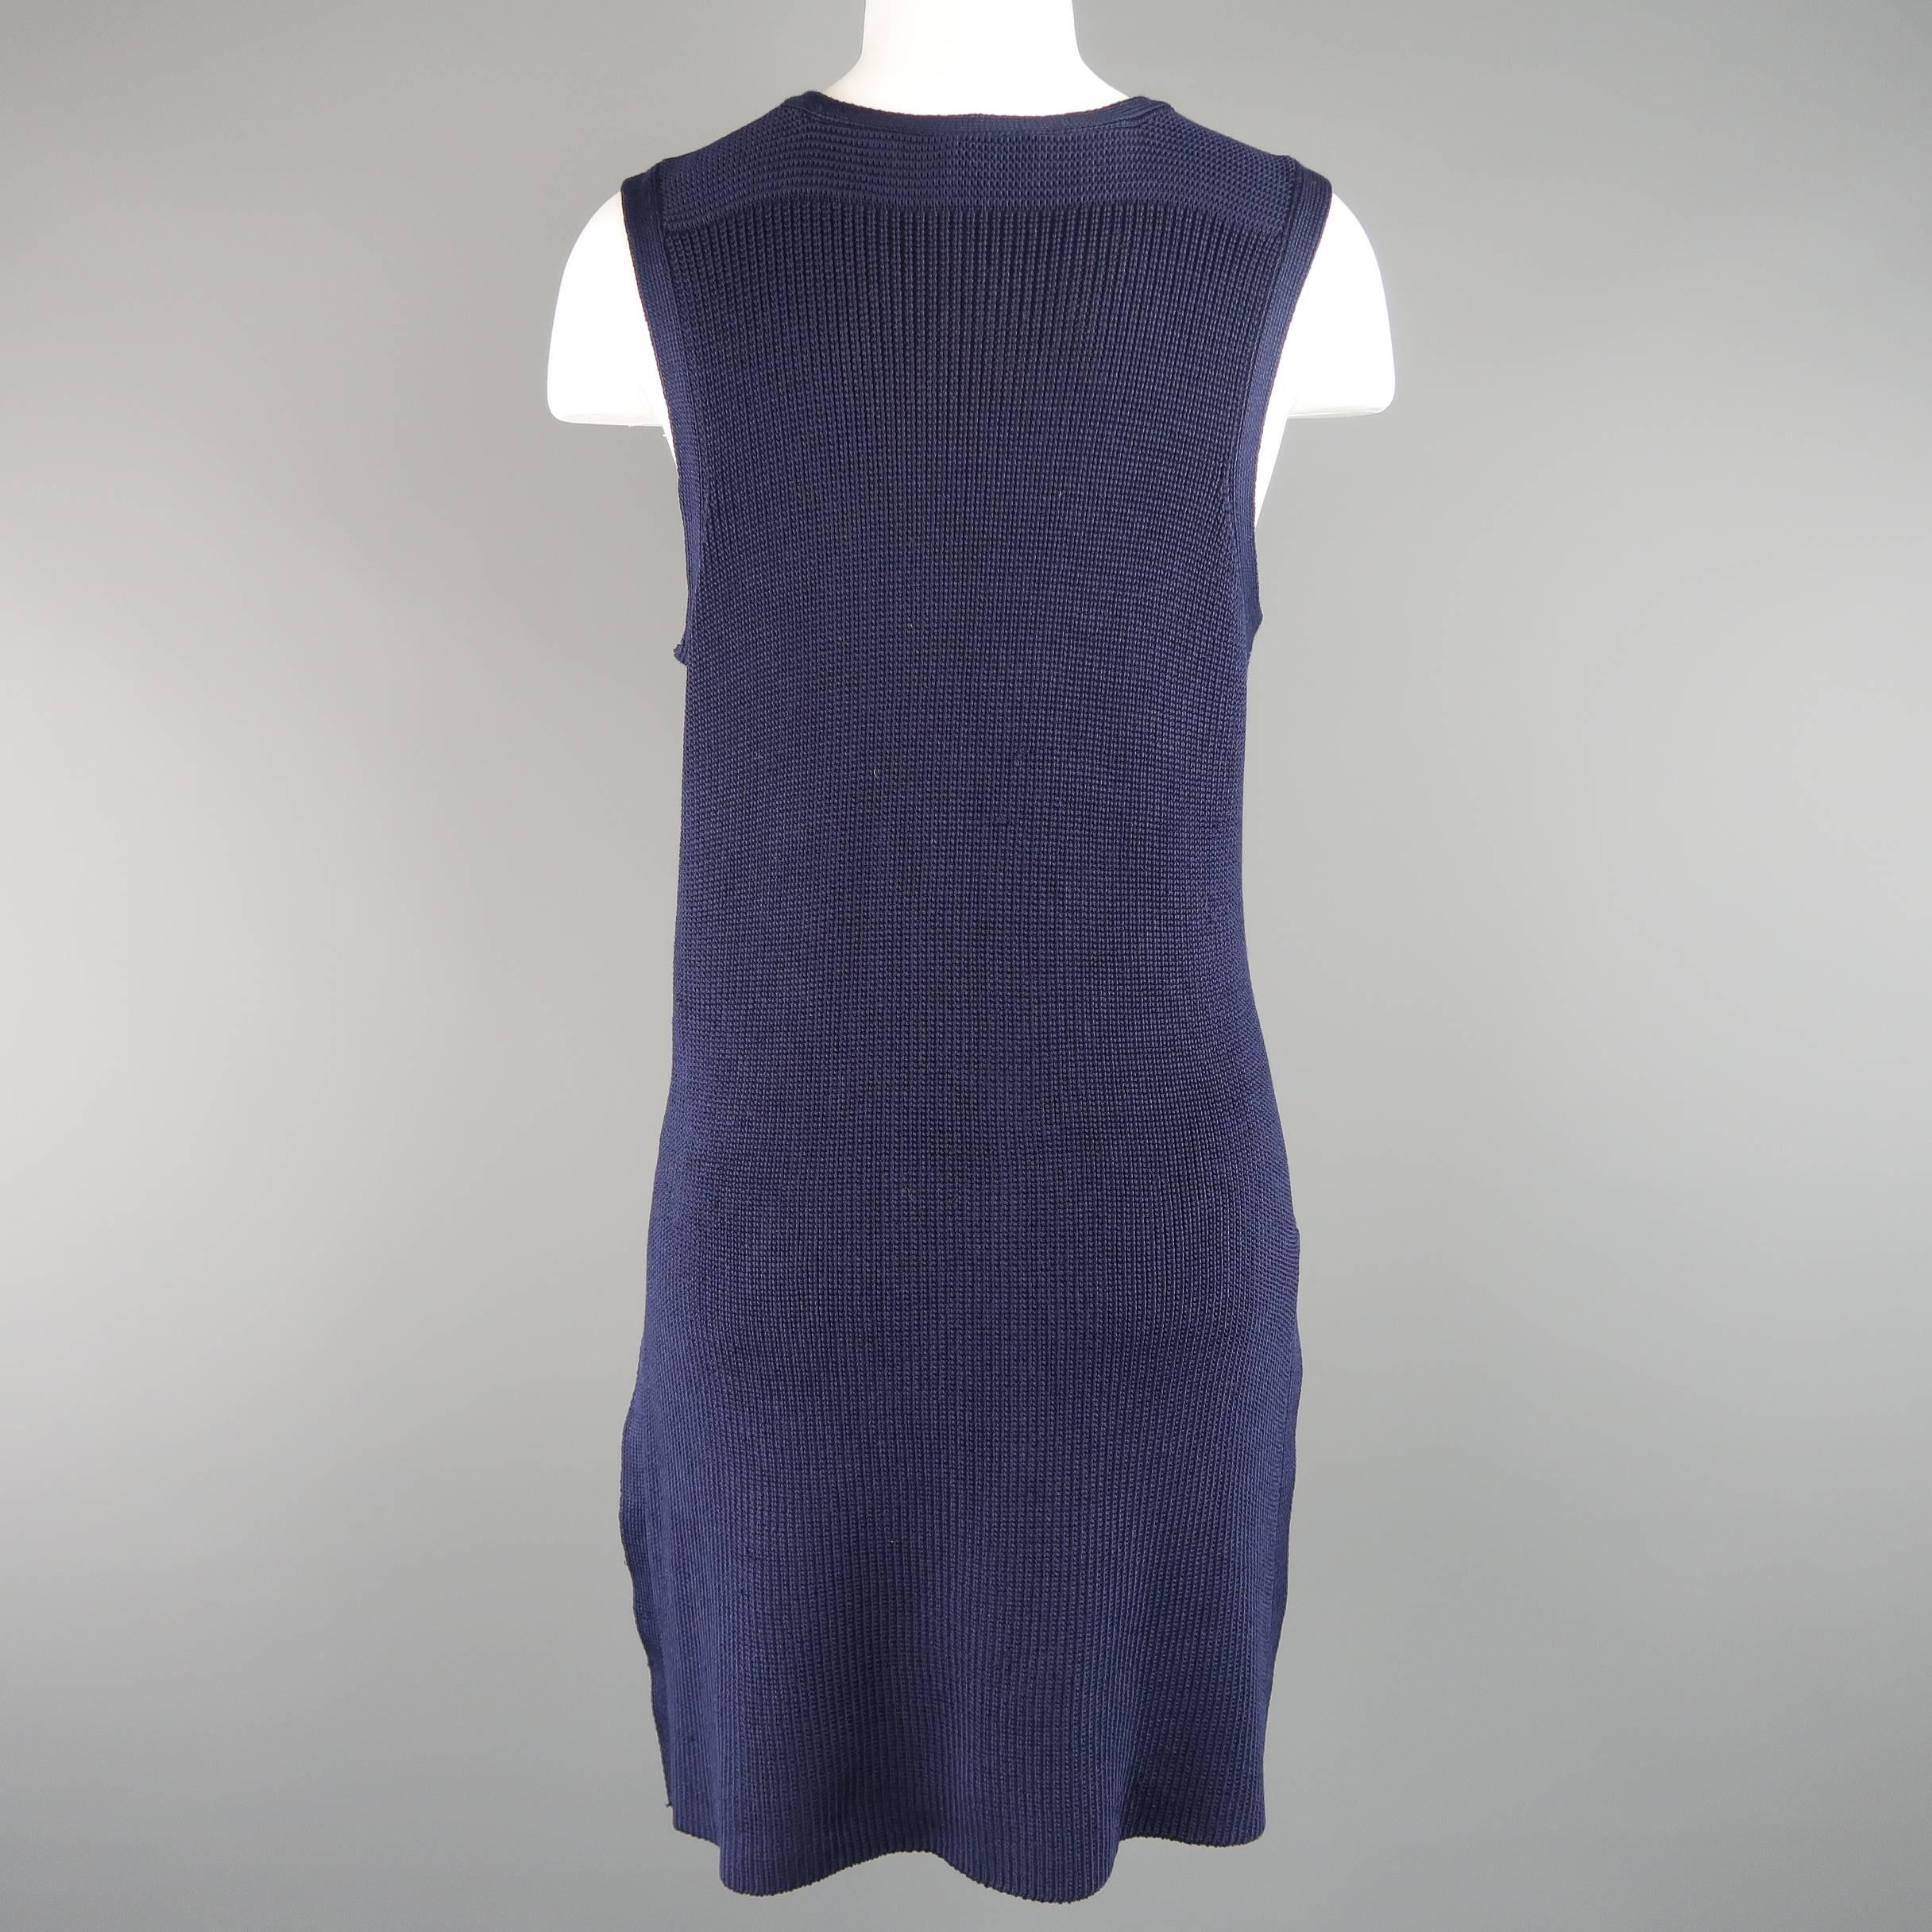 Black RALPH LAUREN Collection Size M Navy Silk Blend Sleeveless Long Sweater Vest Top